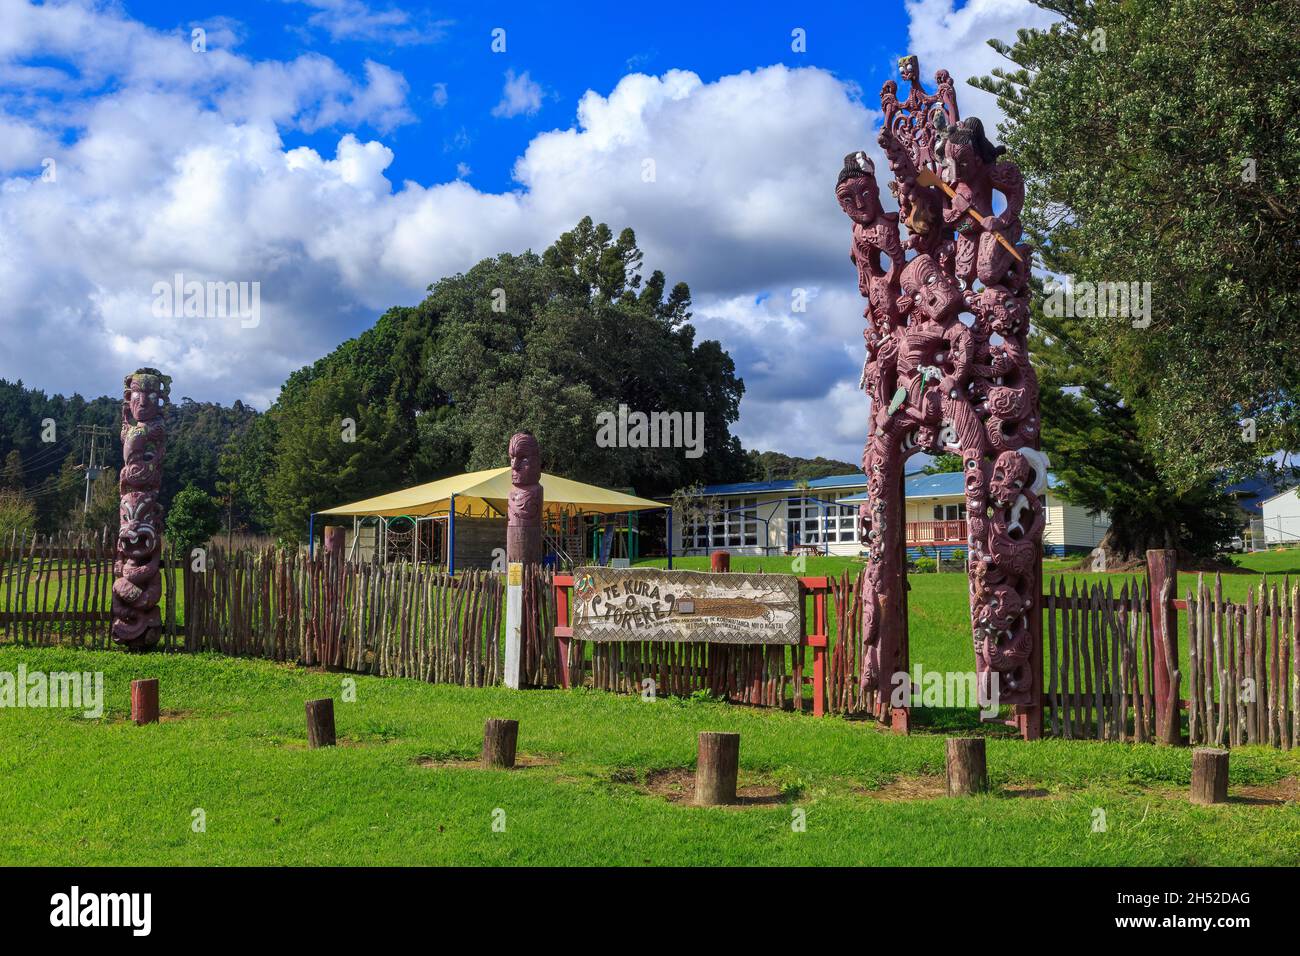 Te Kura o Torere, una scuola nella piccola città di Torere, Nuova Zelanda. La recinzione della scuola è decorata con elaborati intagli Maori Foto Stock